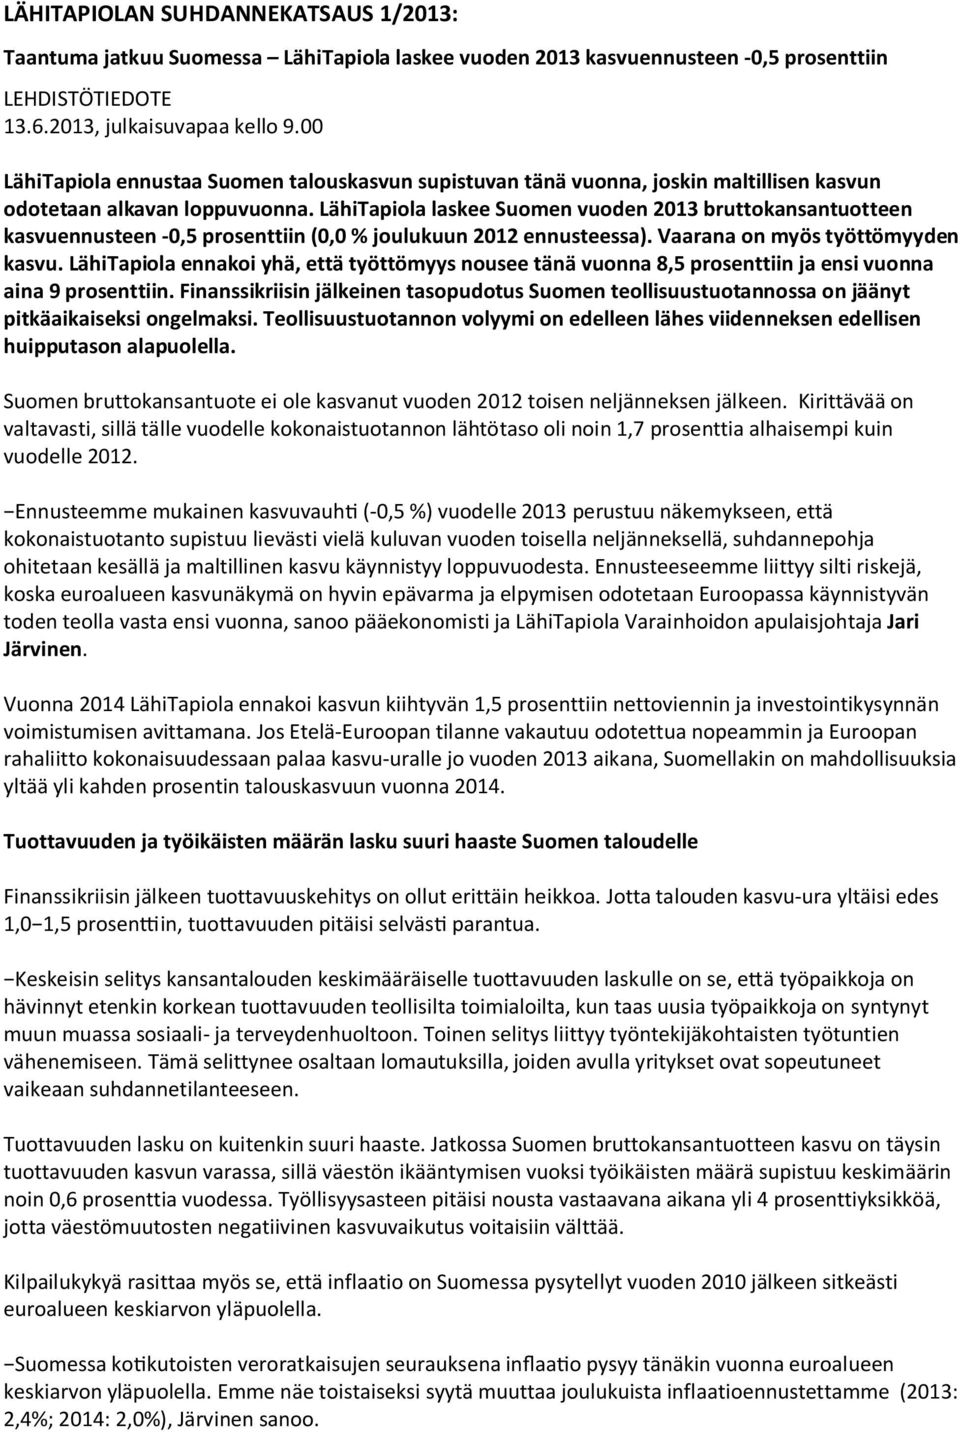 LähiTapiola laskee Suomen vuoden 2013 bruttokansantuotteen kasvuennusteen -0,5 prosenttiin (0,0 % joulukuun 2012 ennusteessa). Vaarana on myös työttömyyden kasvu.